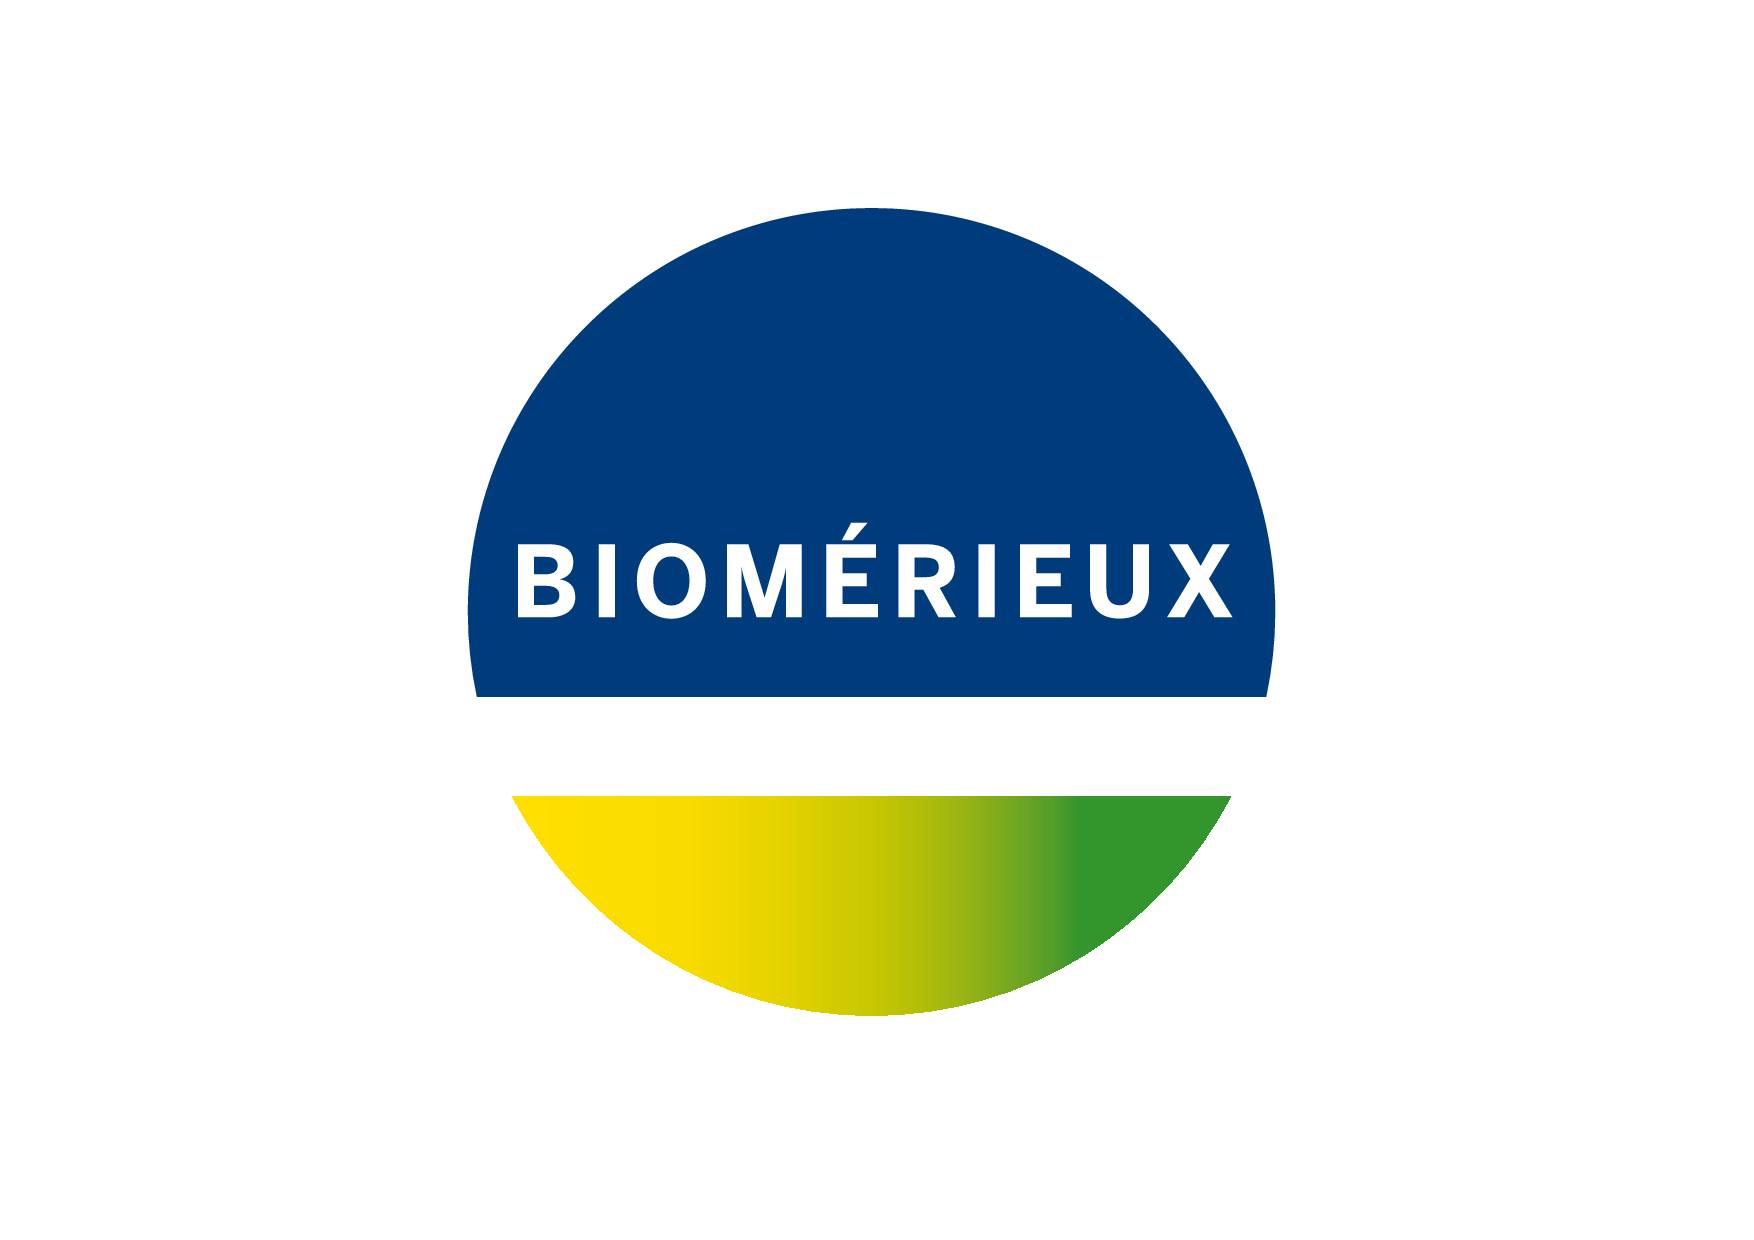 BioMérieux H1 Revenues Rise 7 Percent